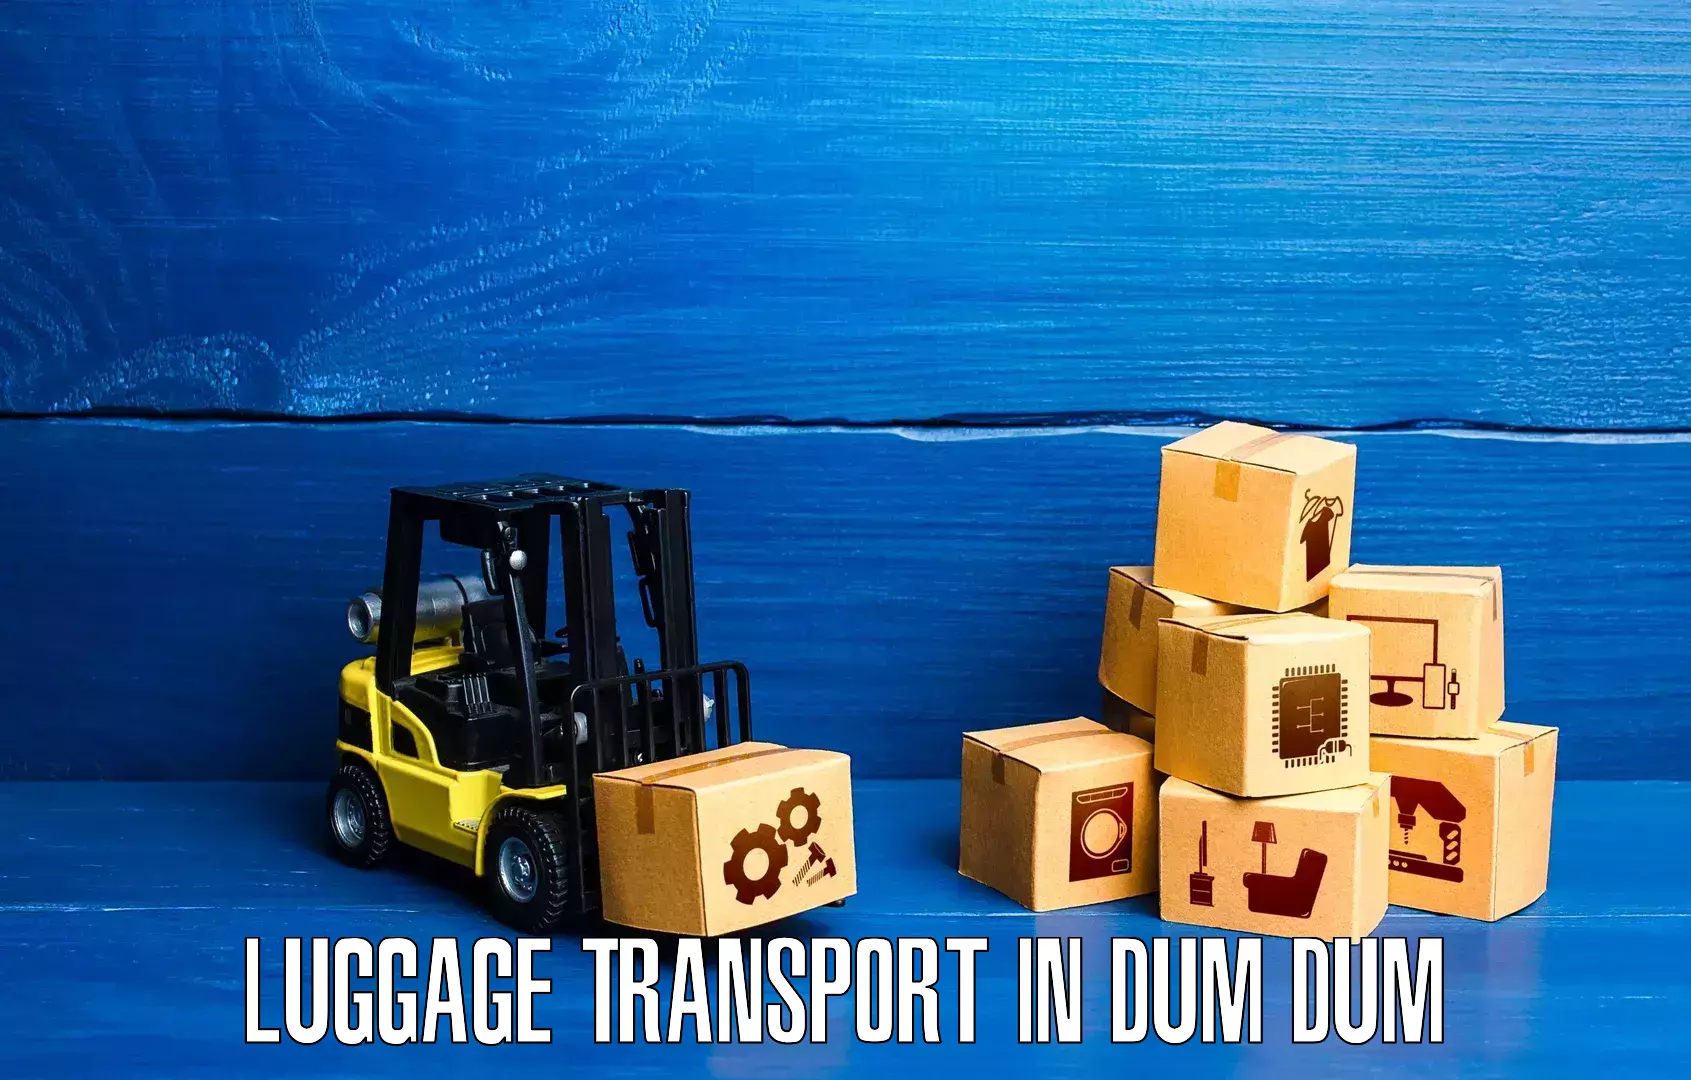 Luggage delivery logistics in Dum Dum